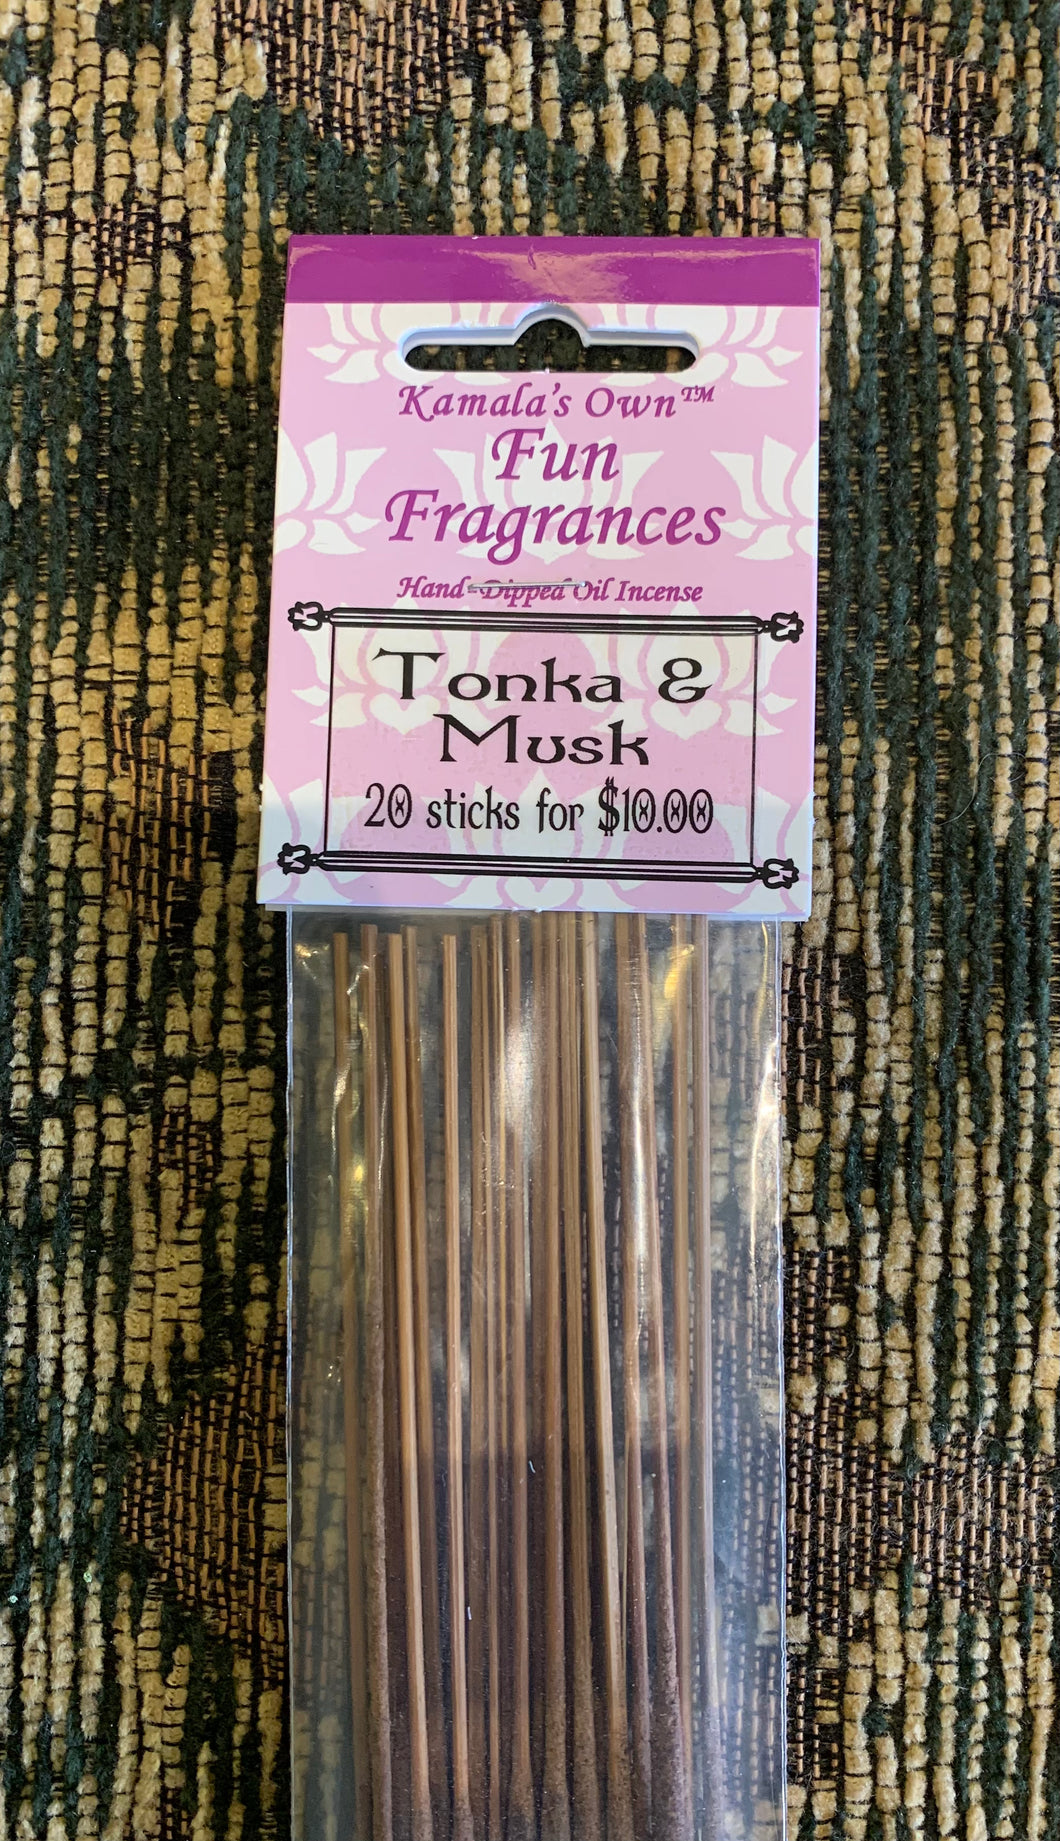 Tonka and Musk incense